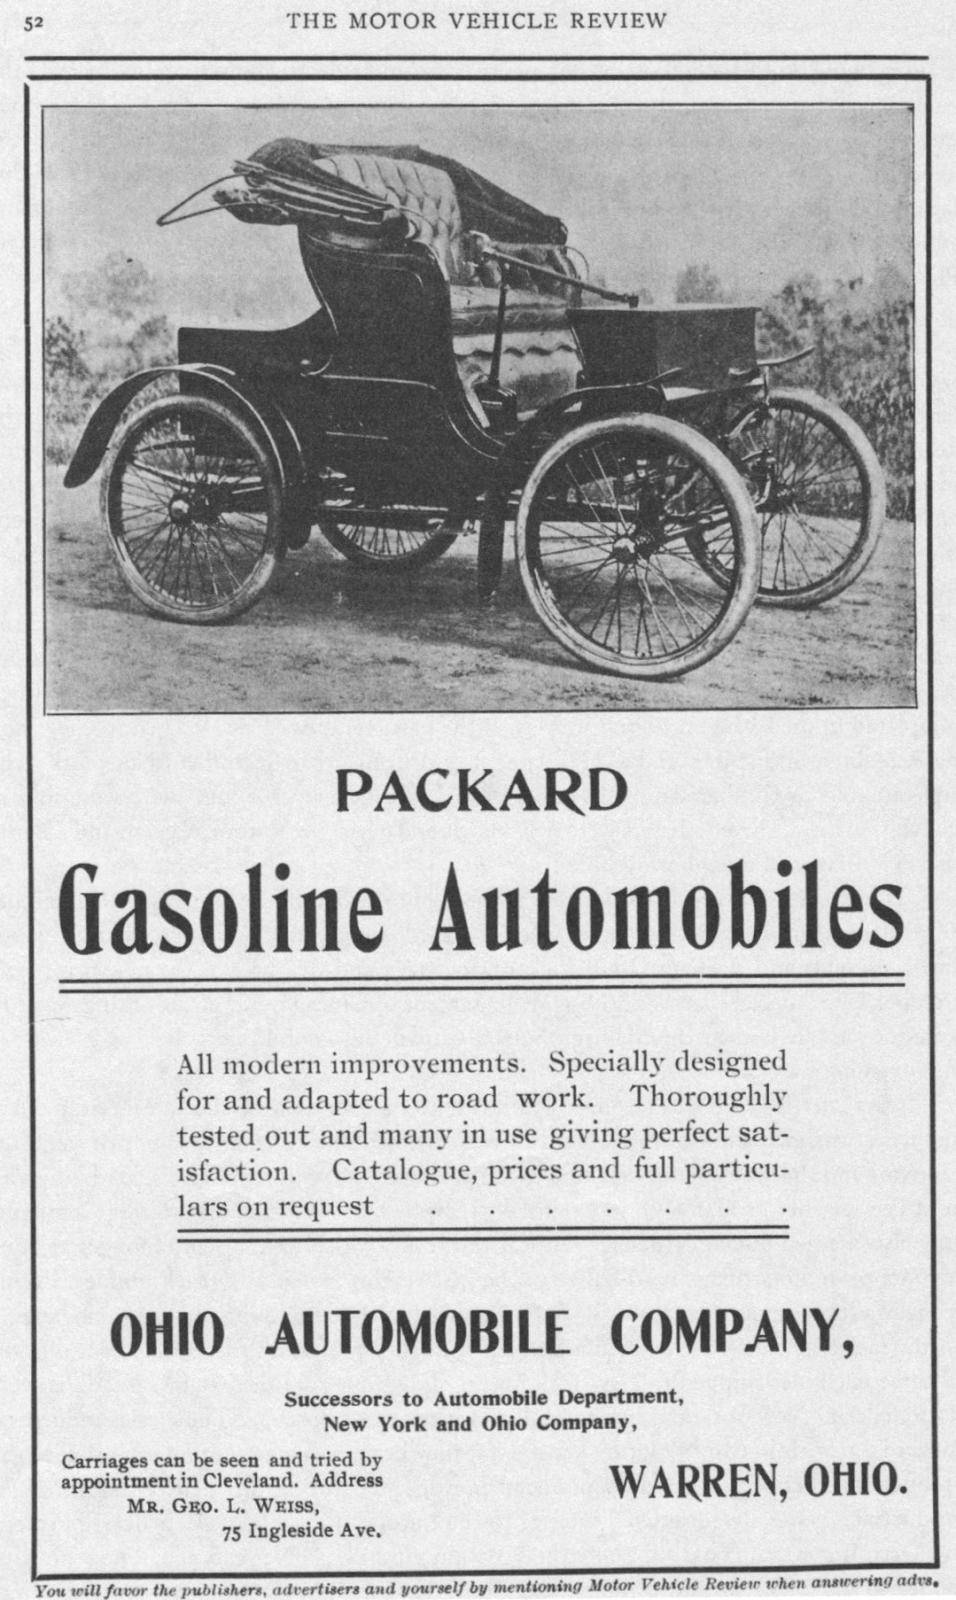 1900 PACKARD ADVERT-B&W